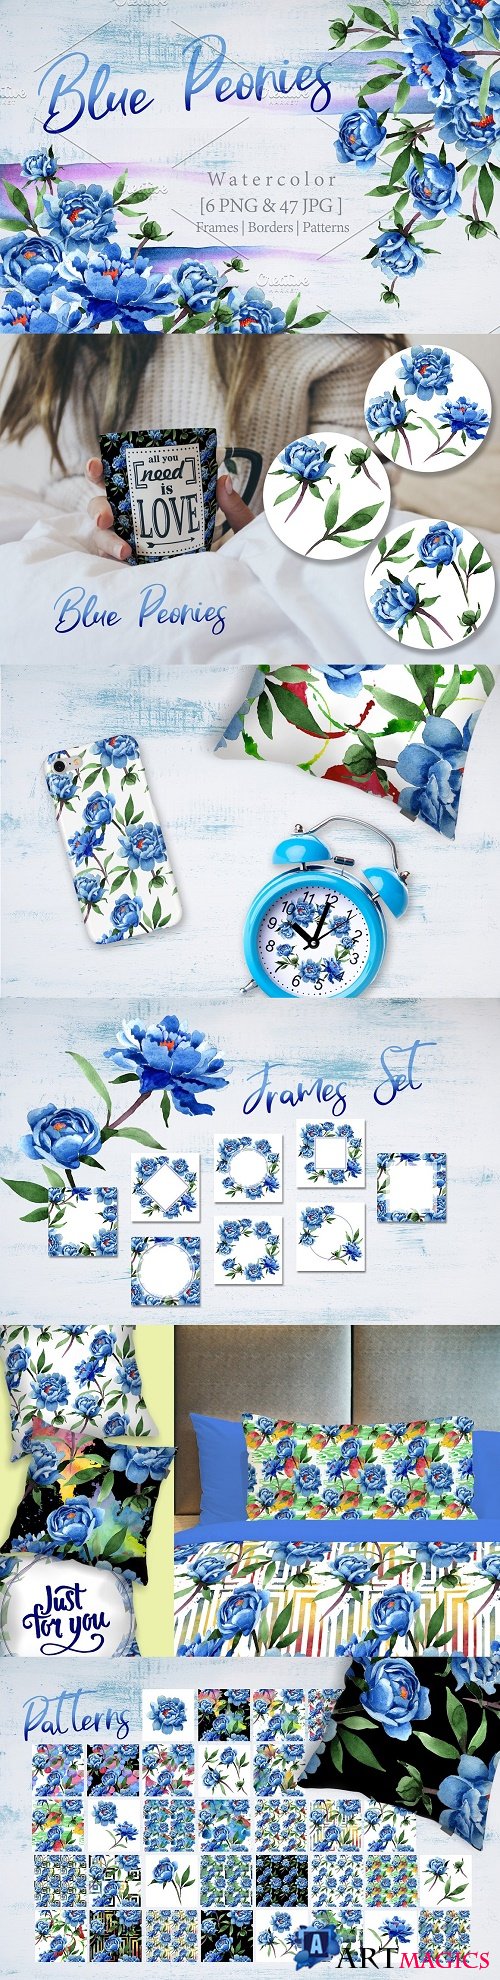 Cool blue Peonies PNG watercolor flower set - 2891465